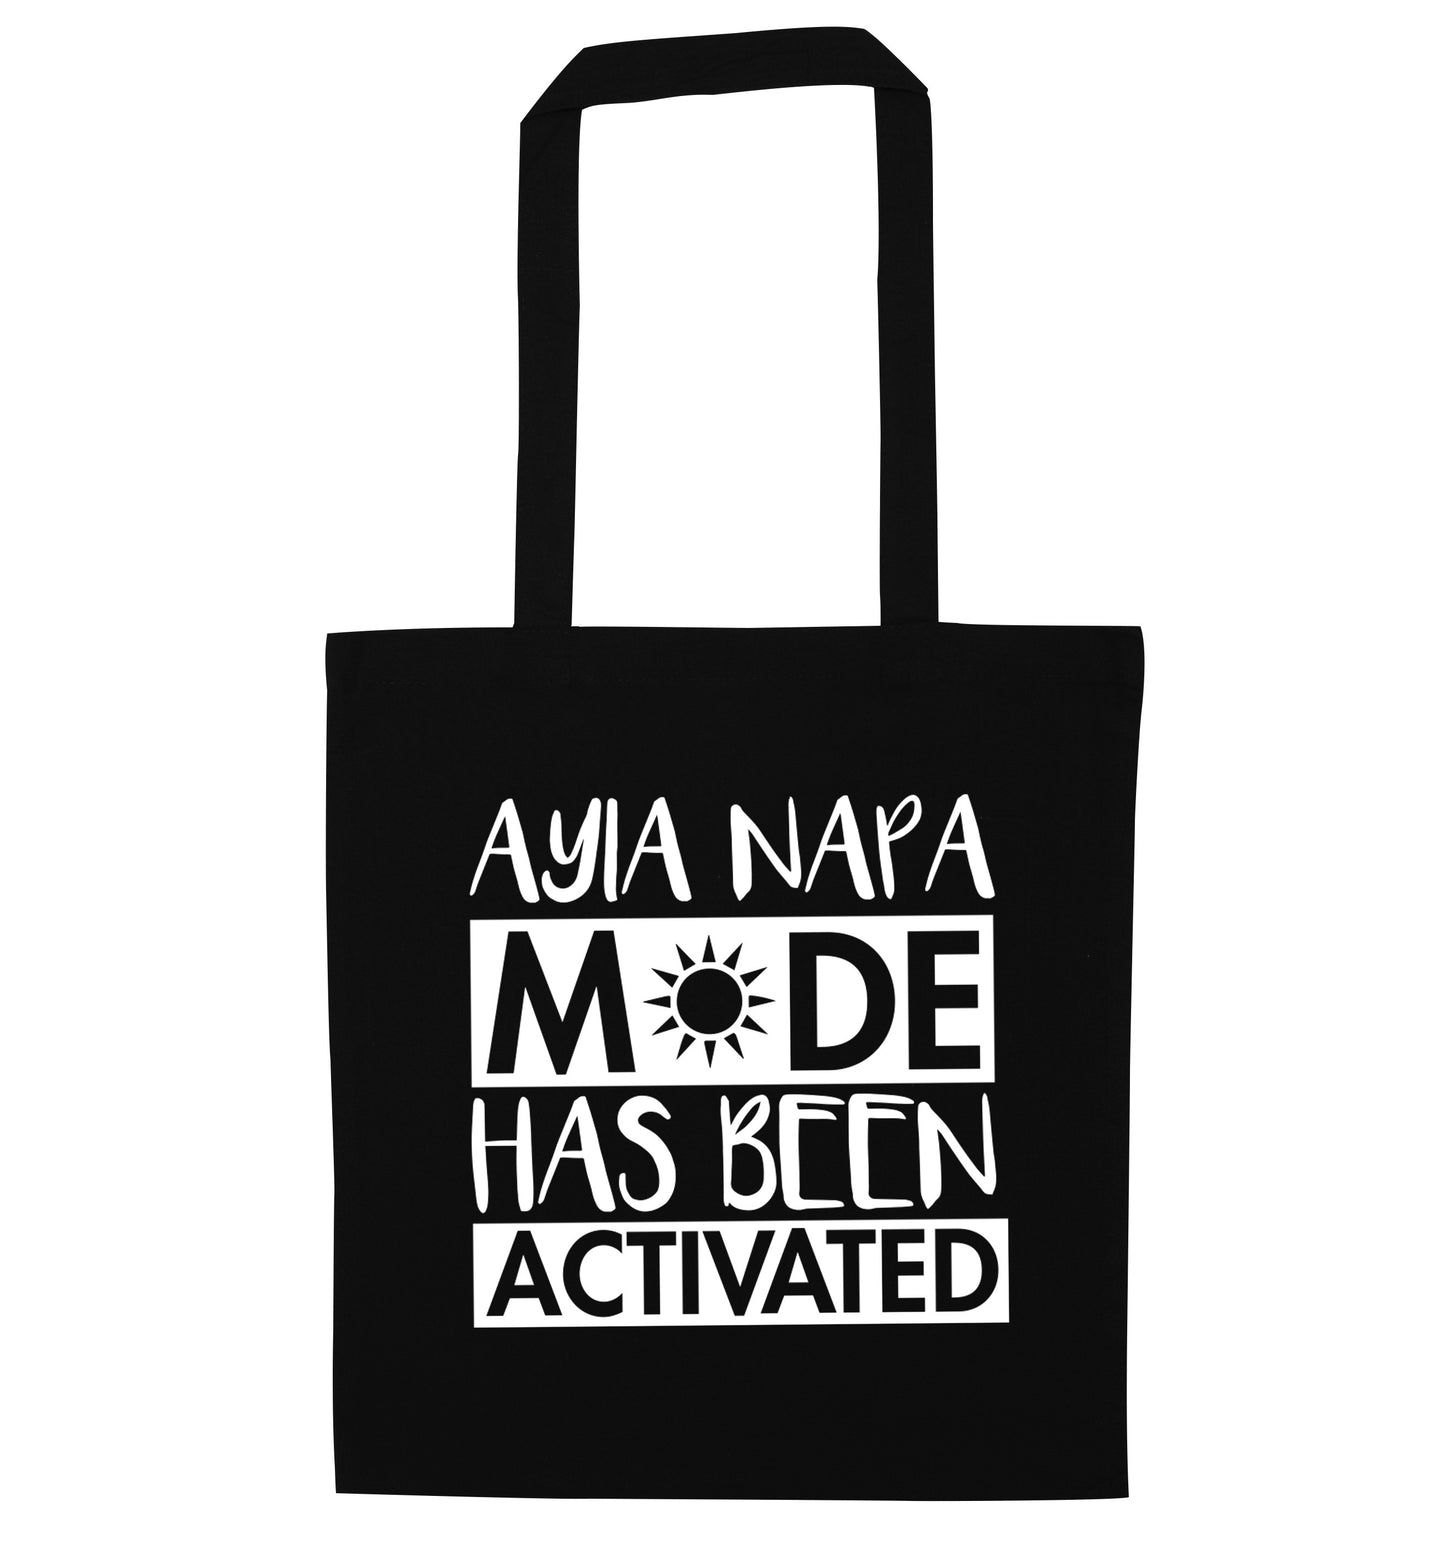 Aiya Napa mode has been activated black tote bag